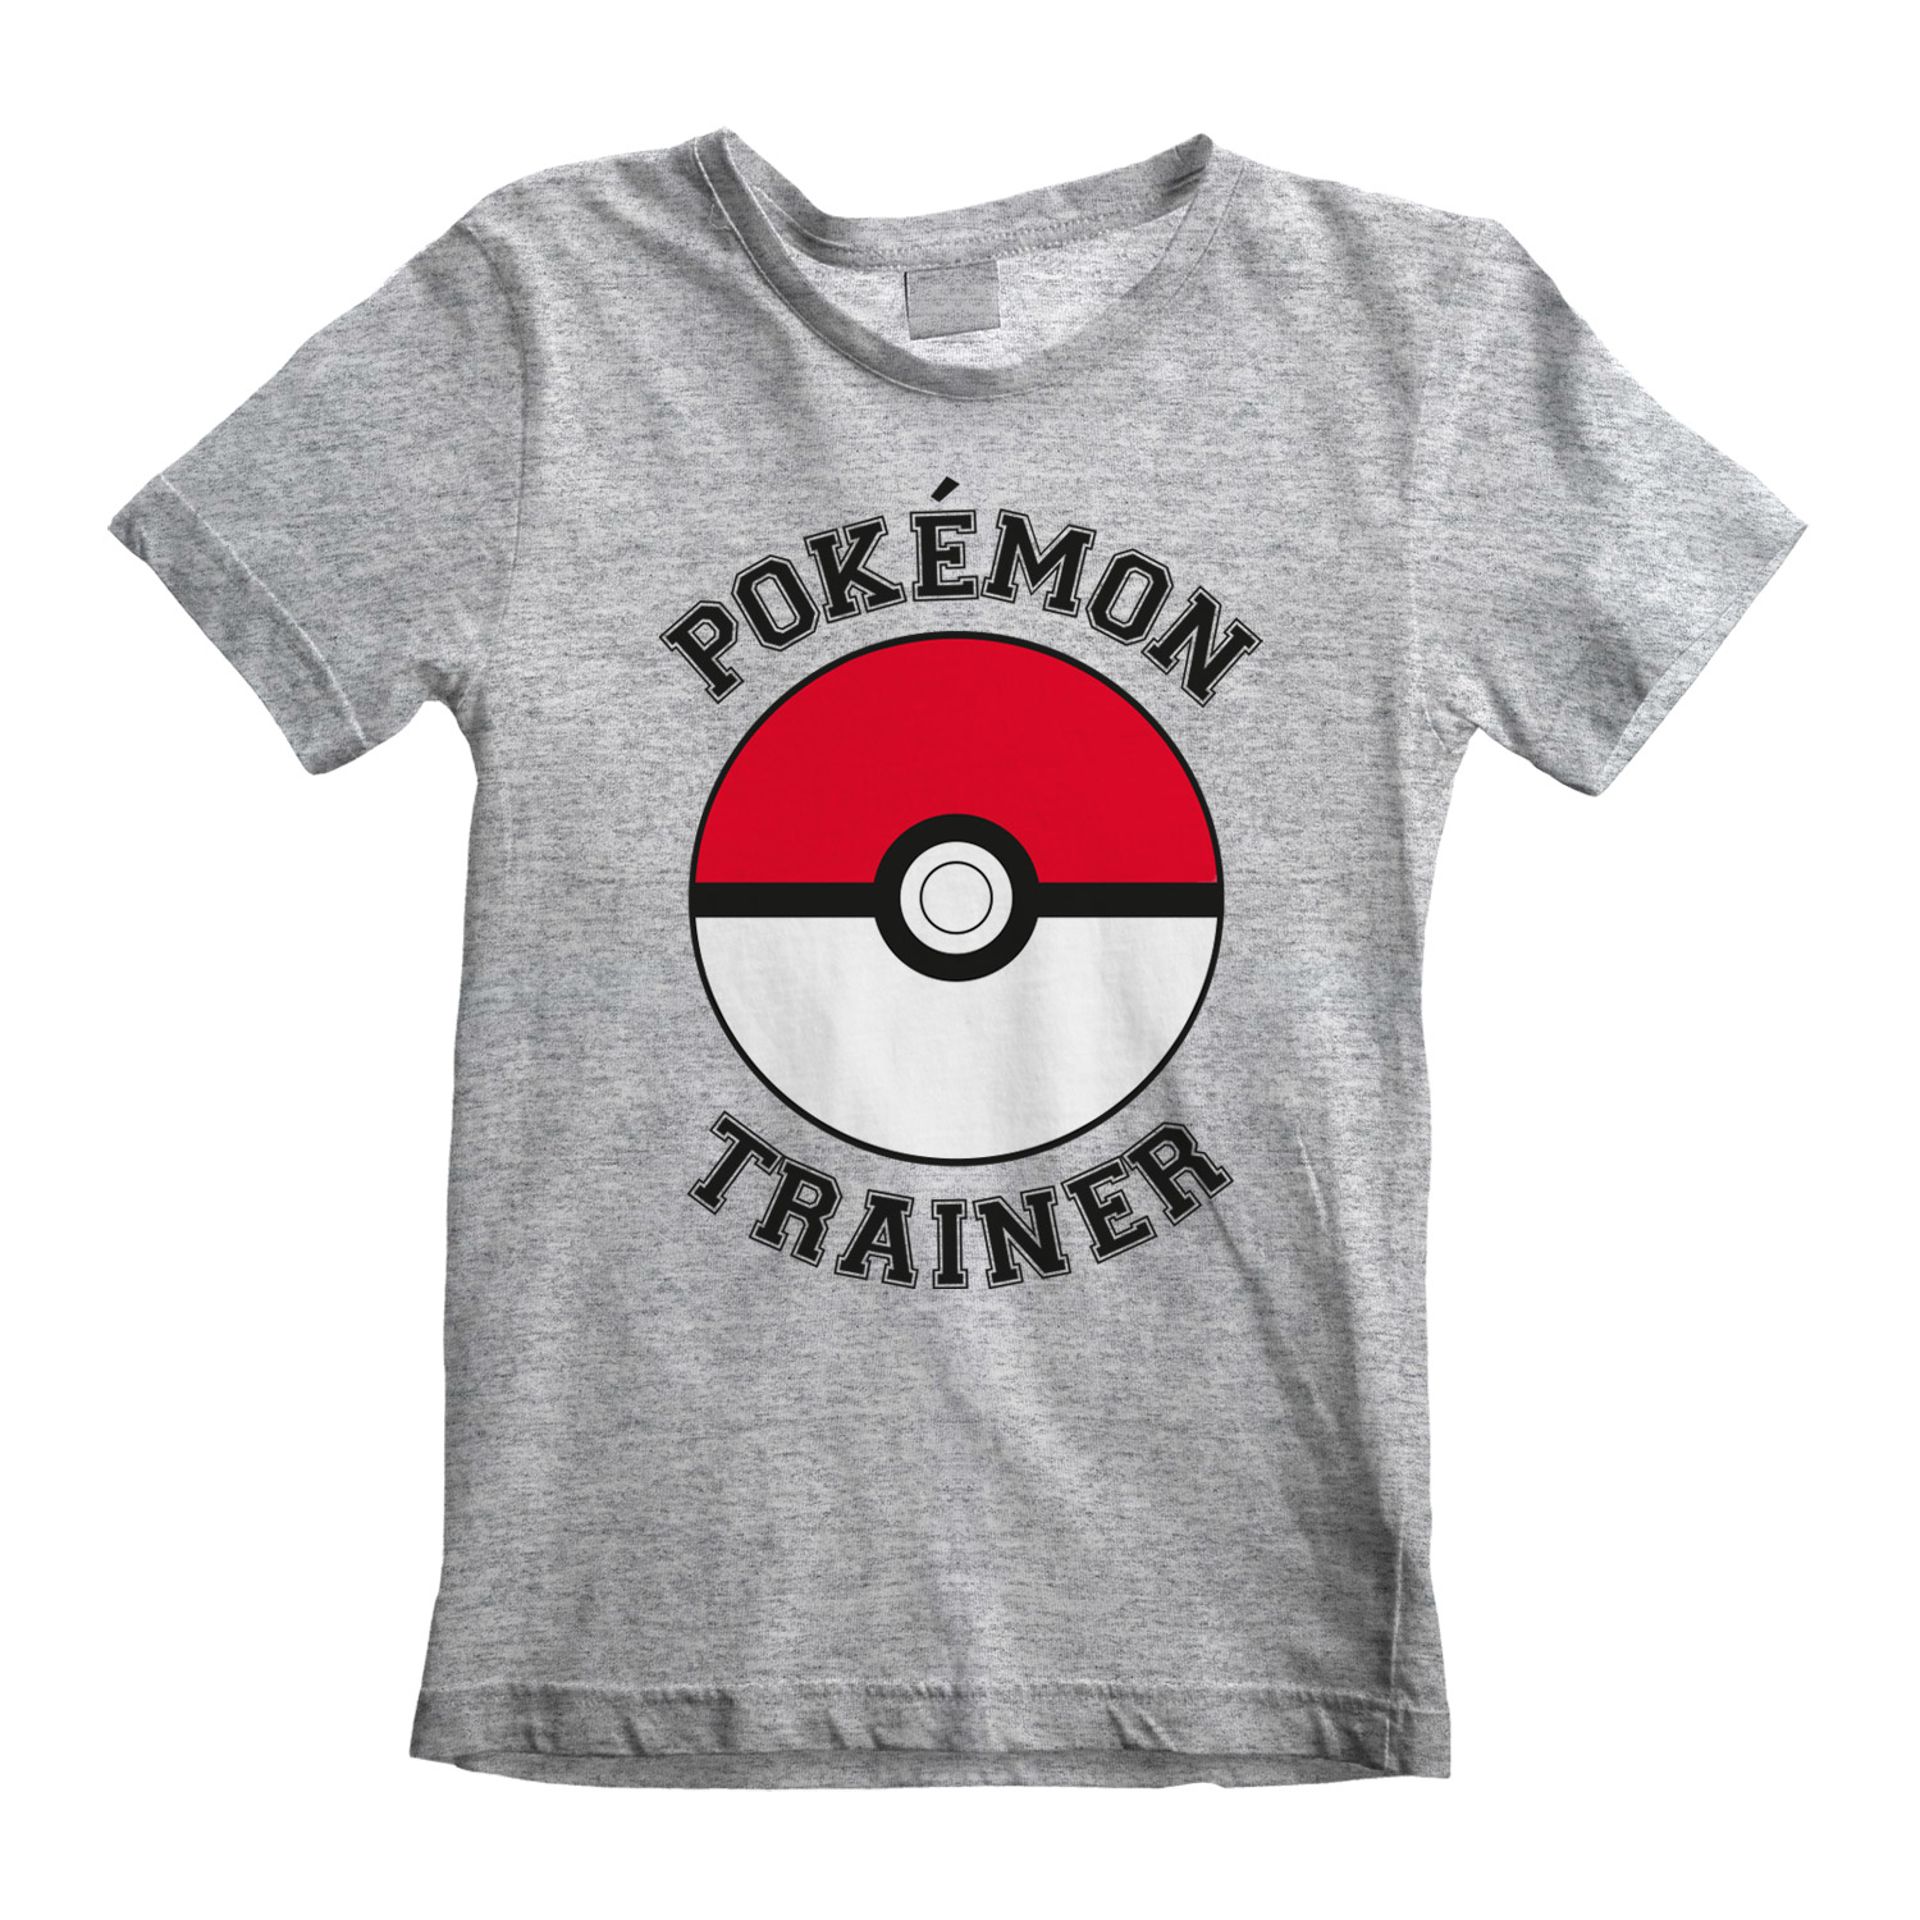 Nintendo - T-shirt Enfant Gris chiné Pokémon Entraîneur - 3-4 an